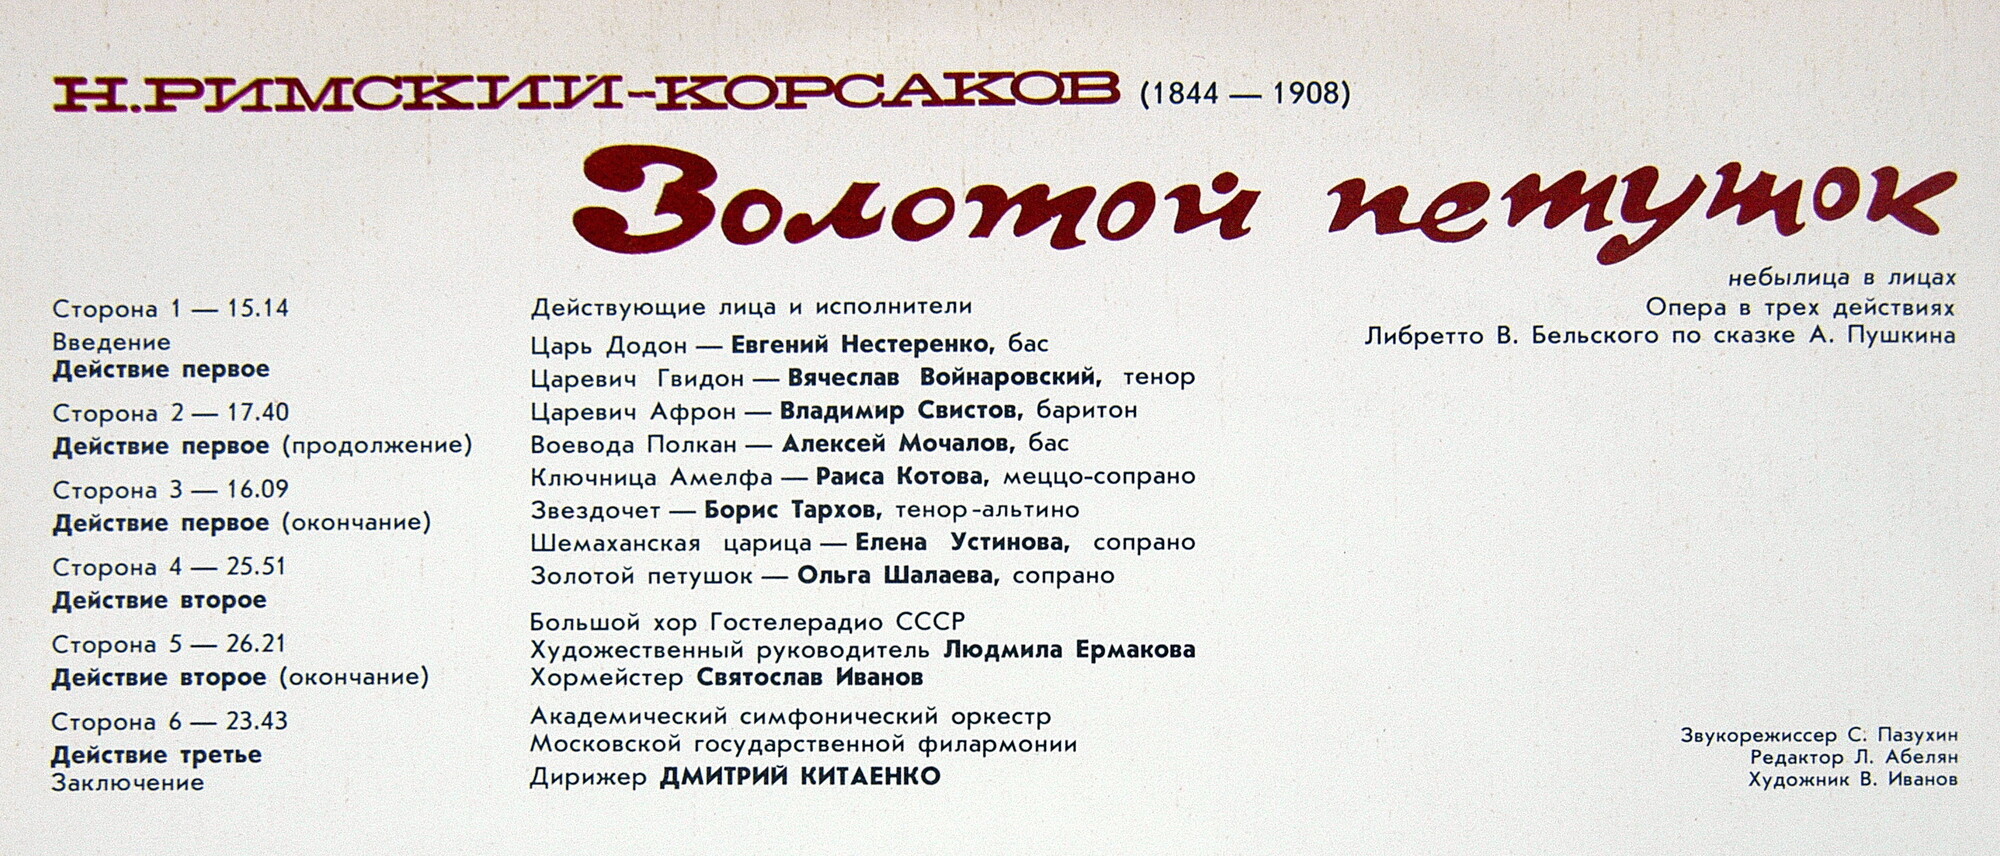 Н. РИМСКИЙ-КОРСАКОВ (1844-1908): «Золотой петушок» (небылица в лицах), опера в трех действиях.